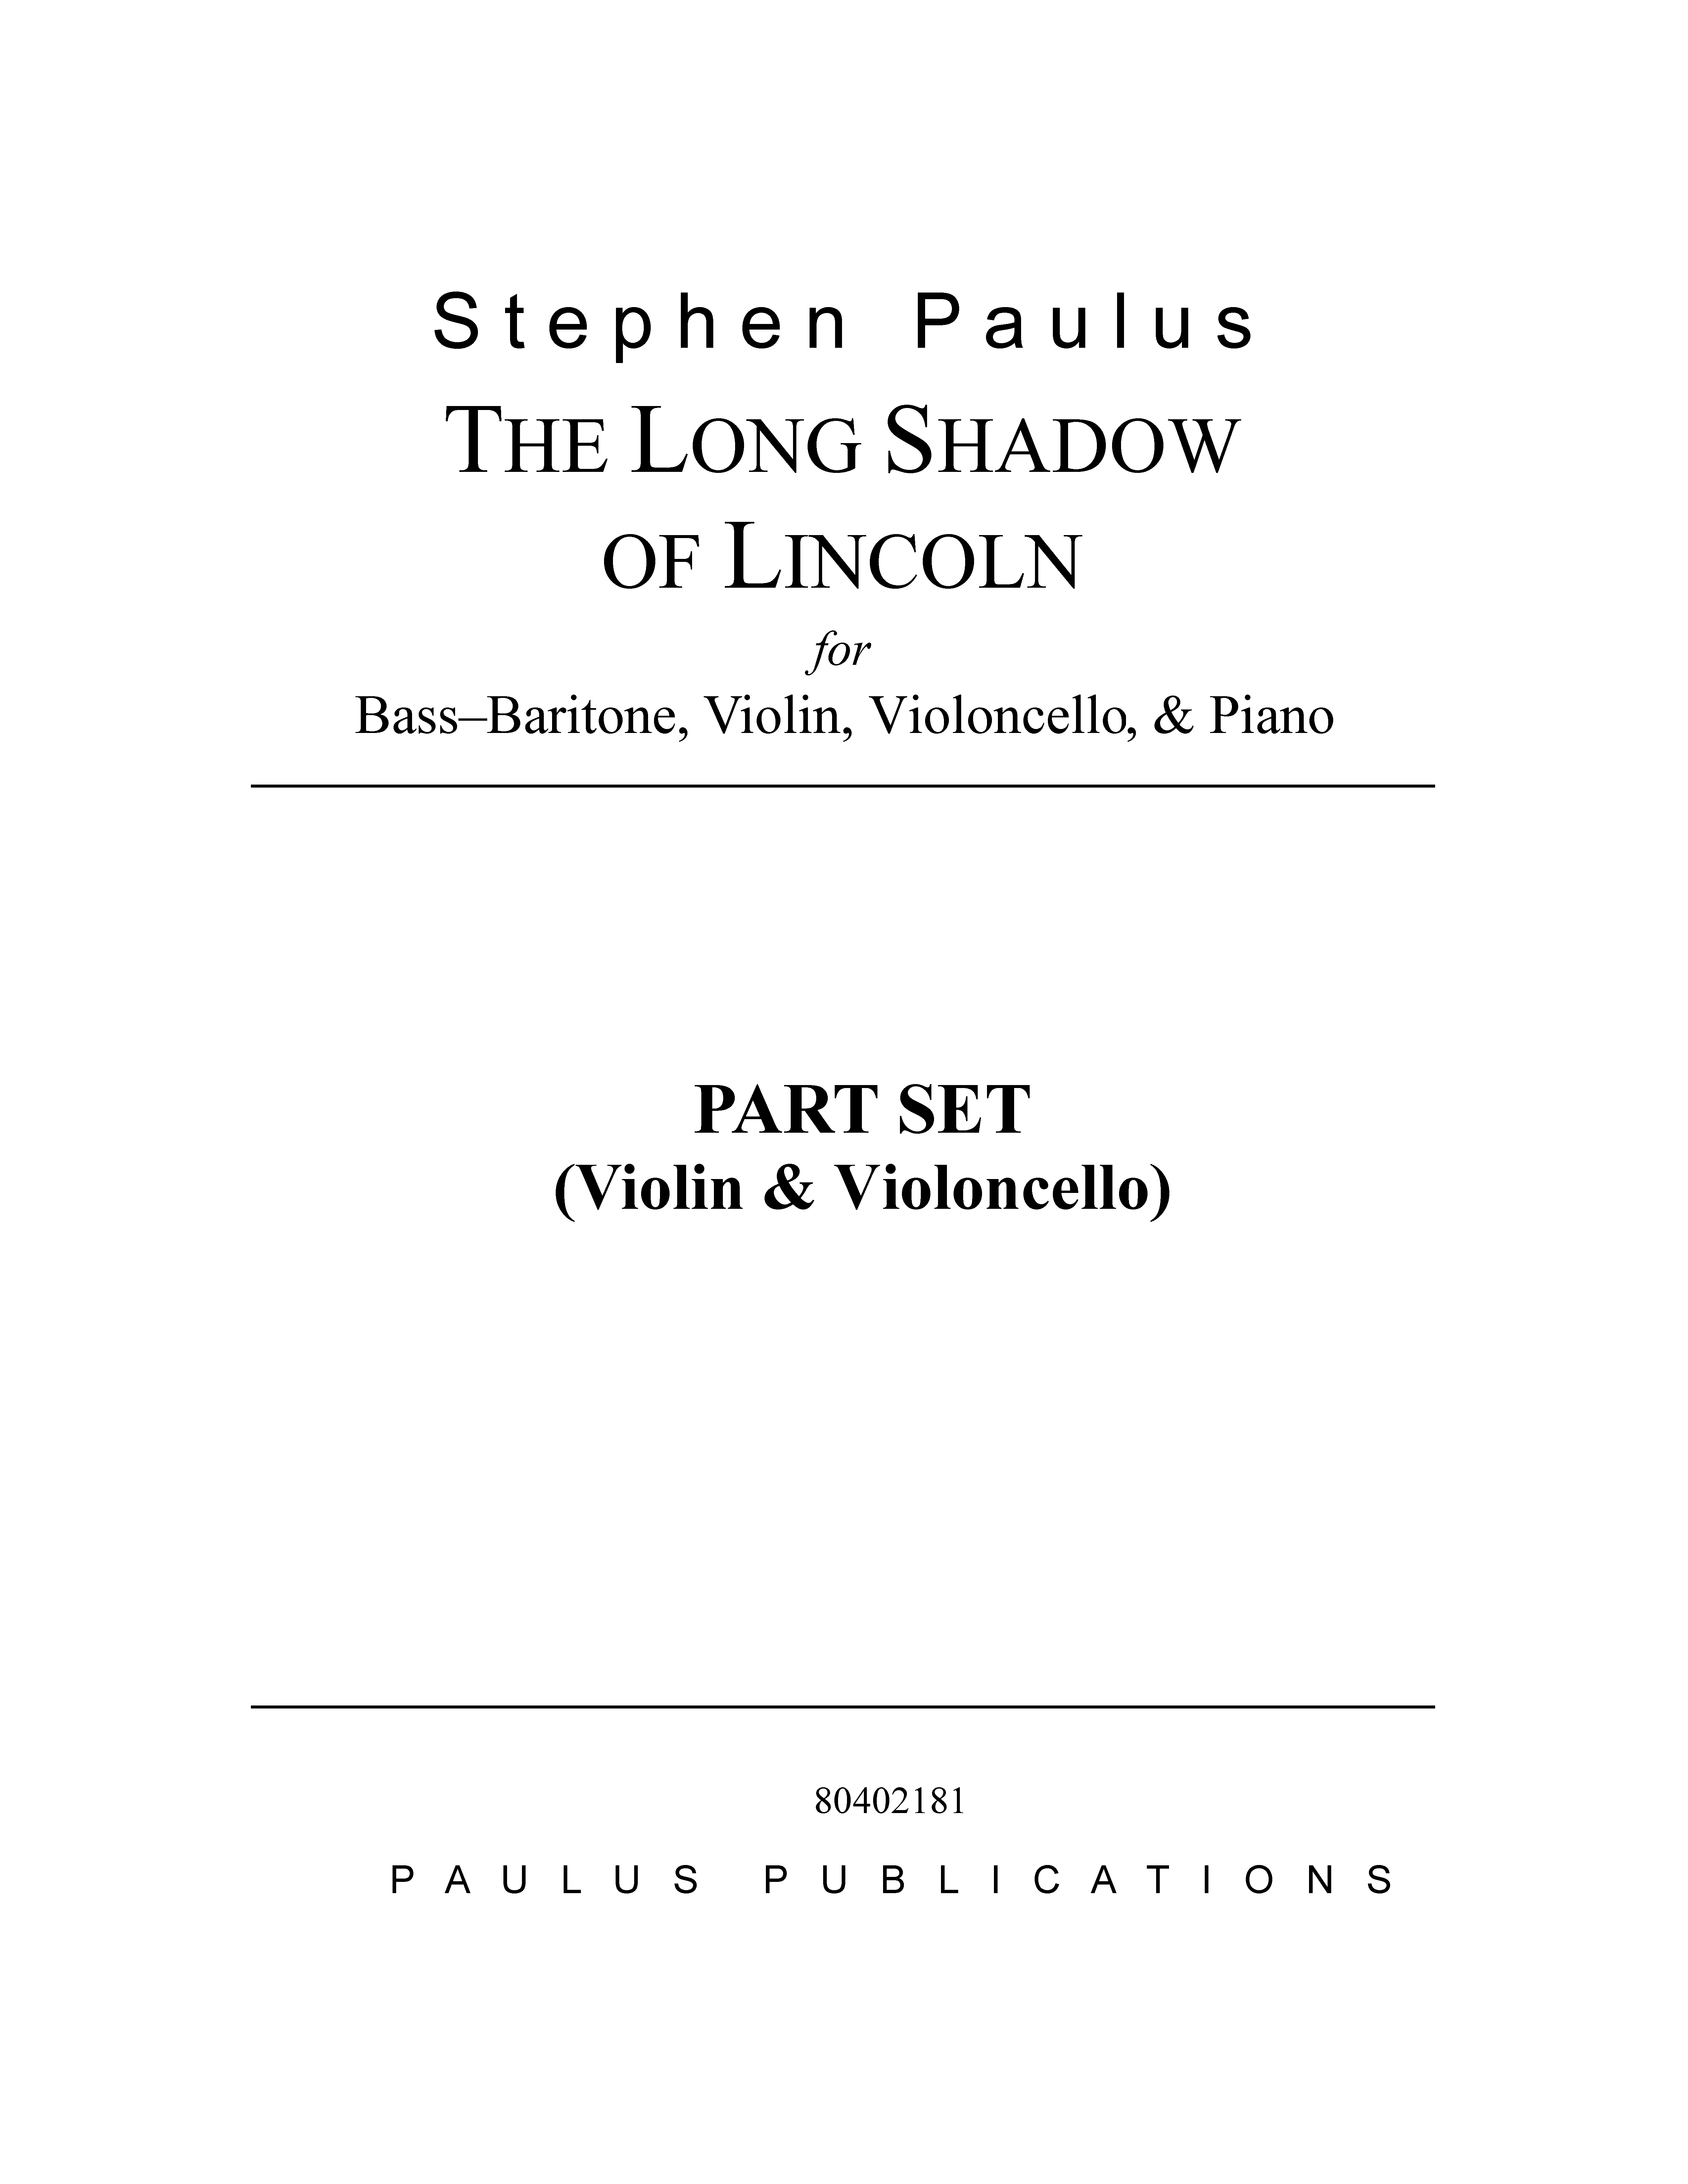 Long Shadow of Lincoln, The for Bass-Baritone, Violin, Violoncello & Piano